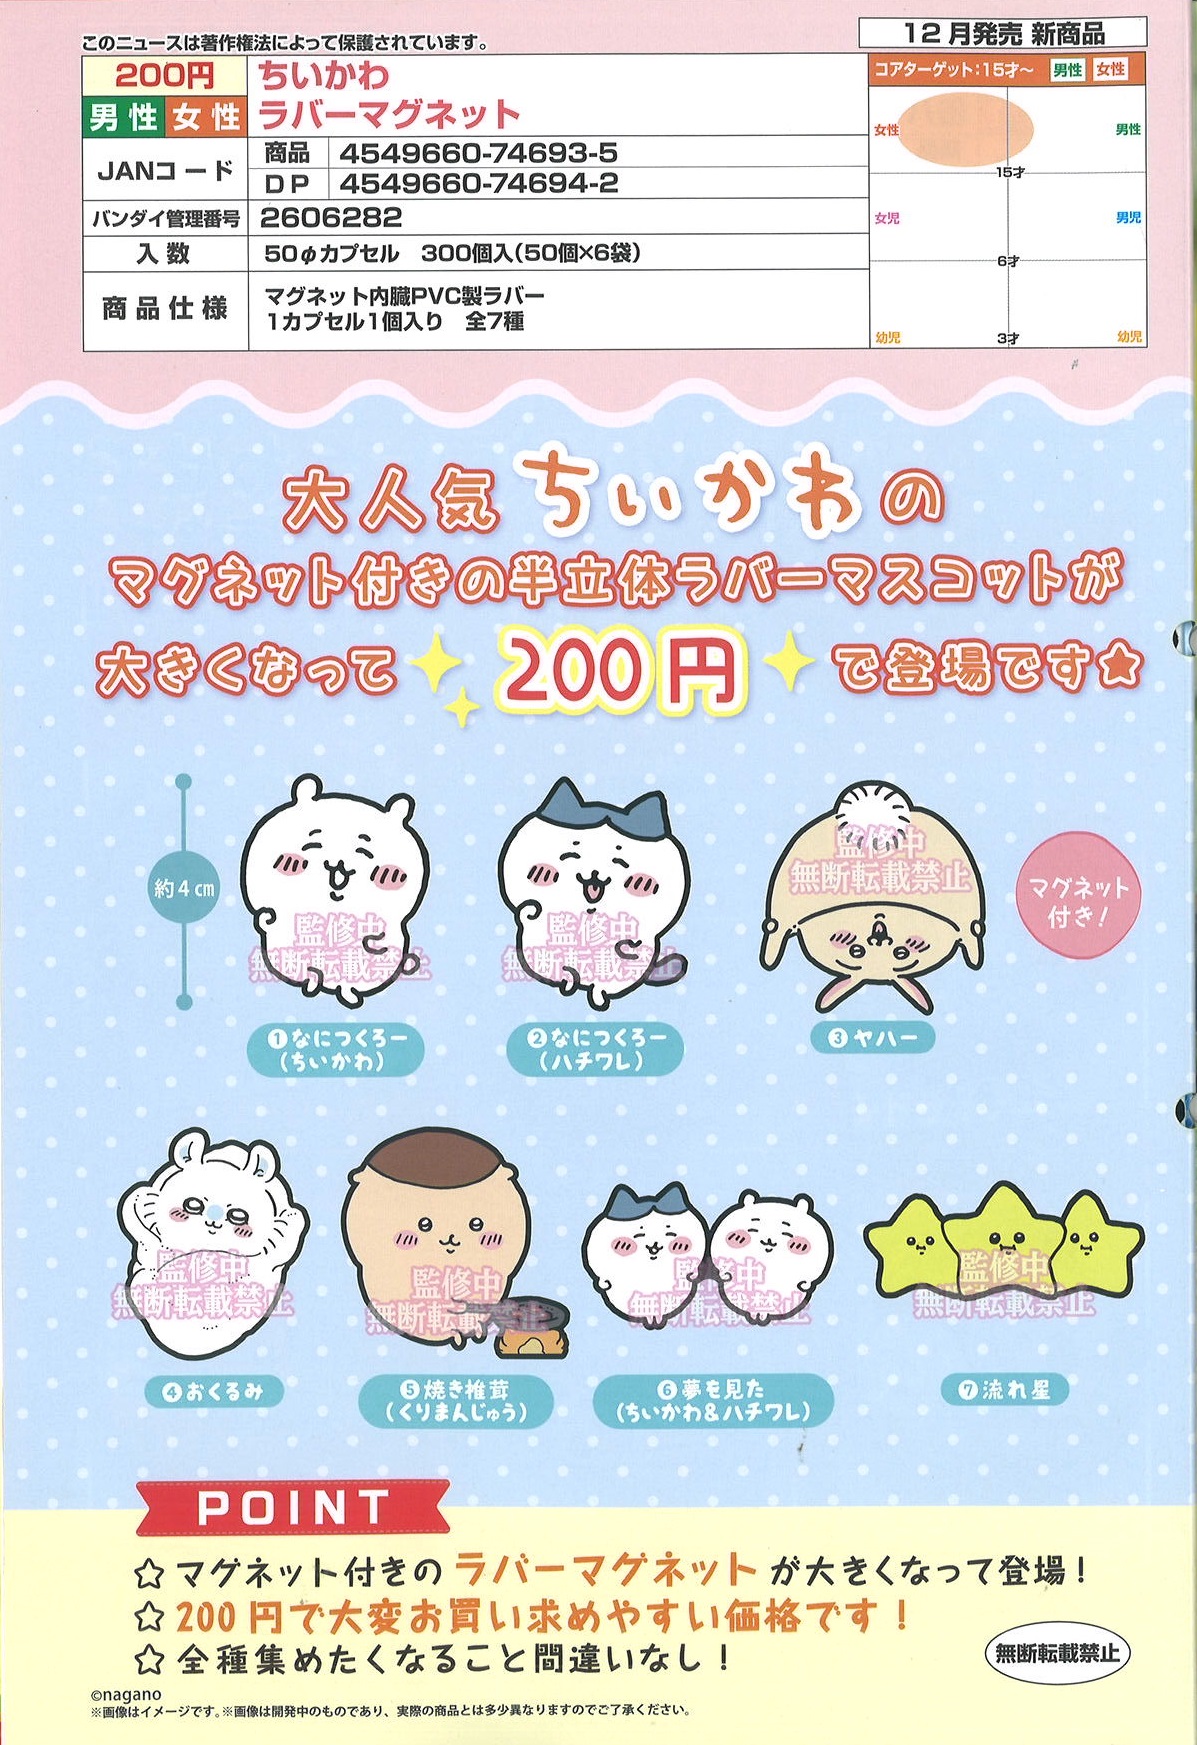 【A】200日元扭蛋 小可爱 橡胶冰箱贴 全7种 (1袋50个) 746935